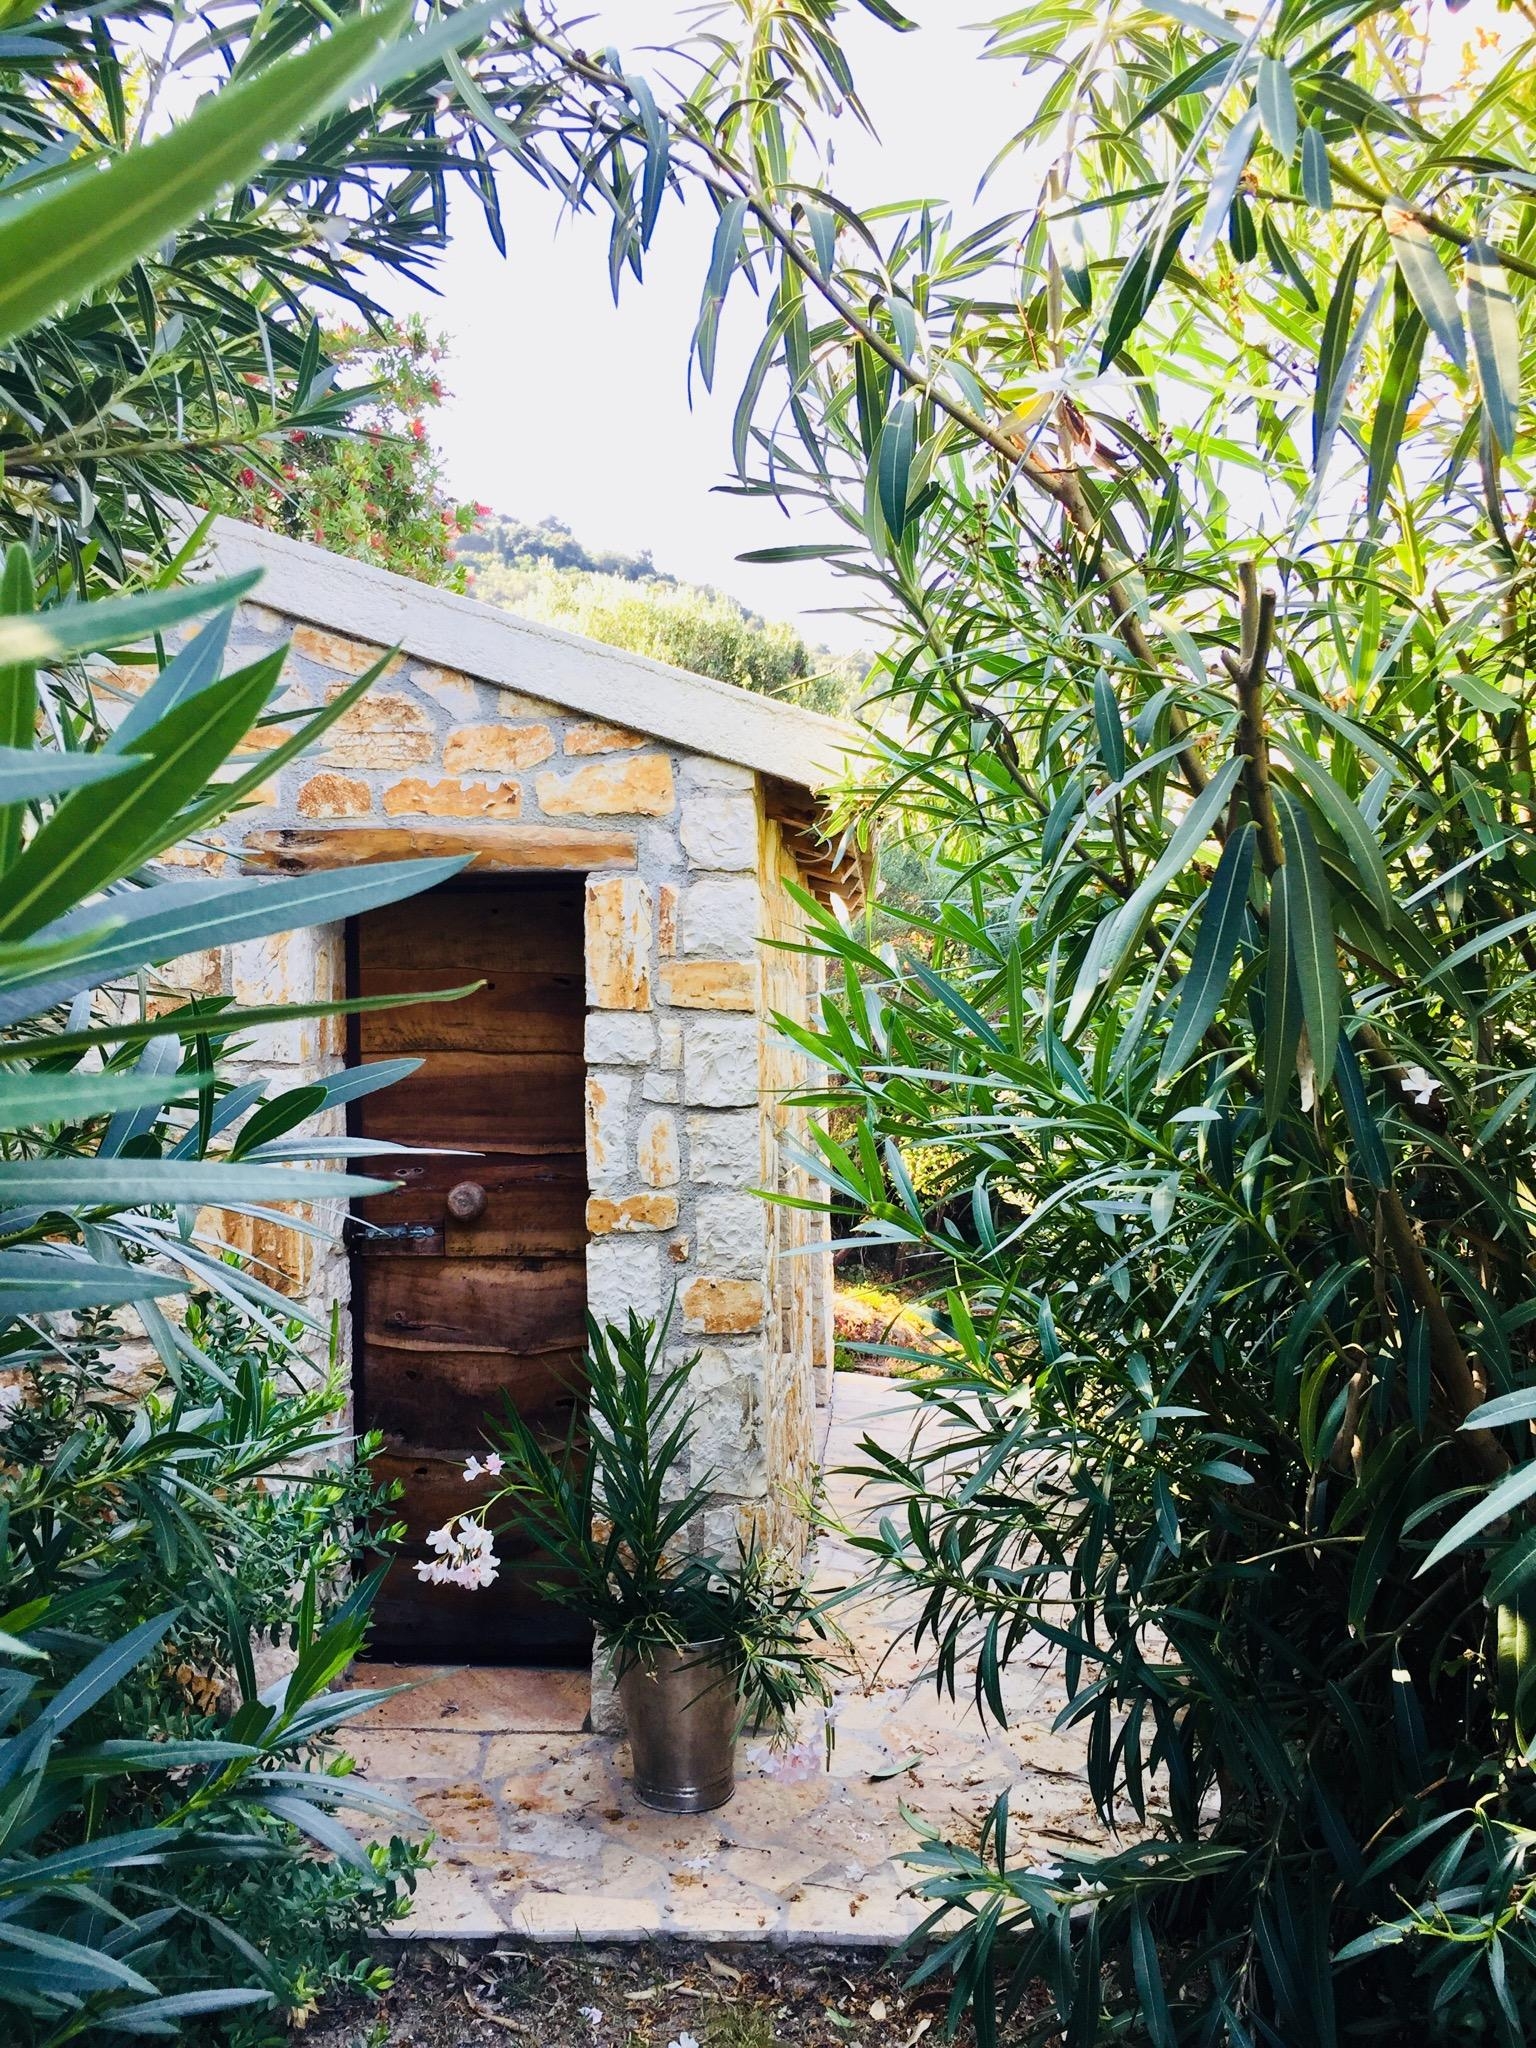 Unsere Gartenhütte zwischen Oleanderbüschen #steinhaus #oleander #olivenholz #holztür #natursteinmauer #greekstyle 